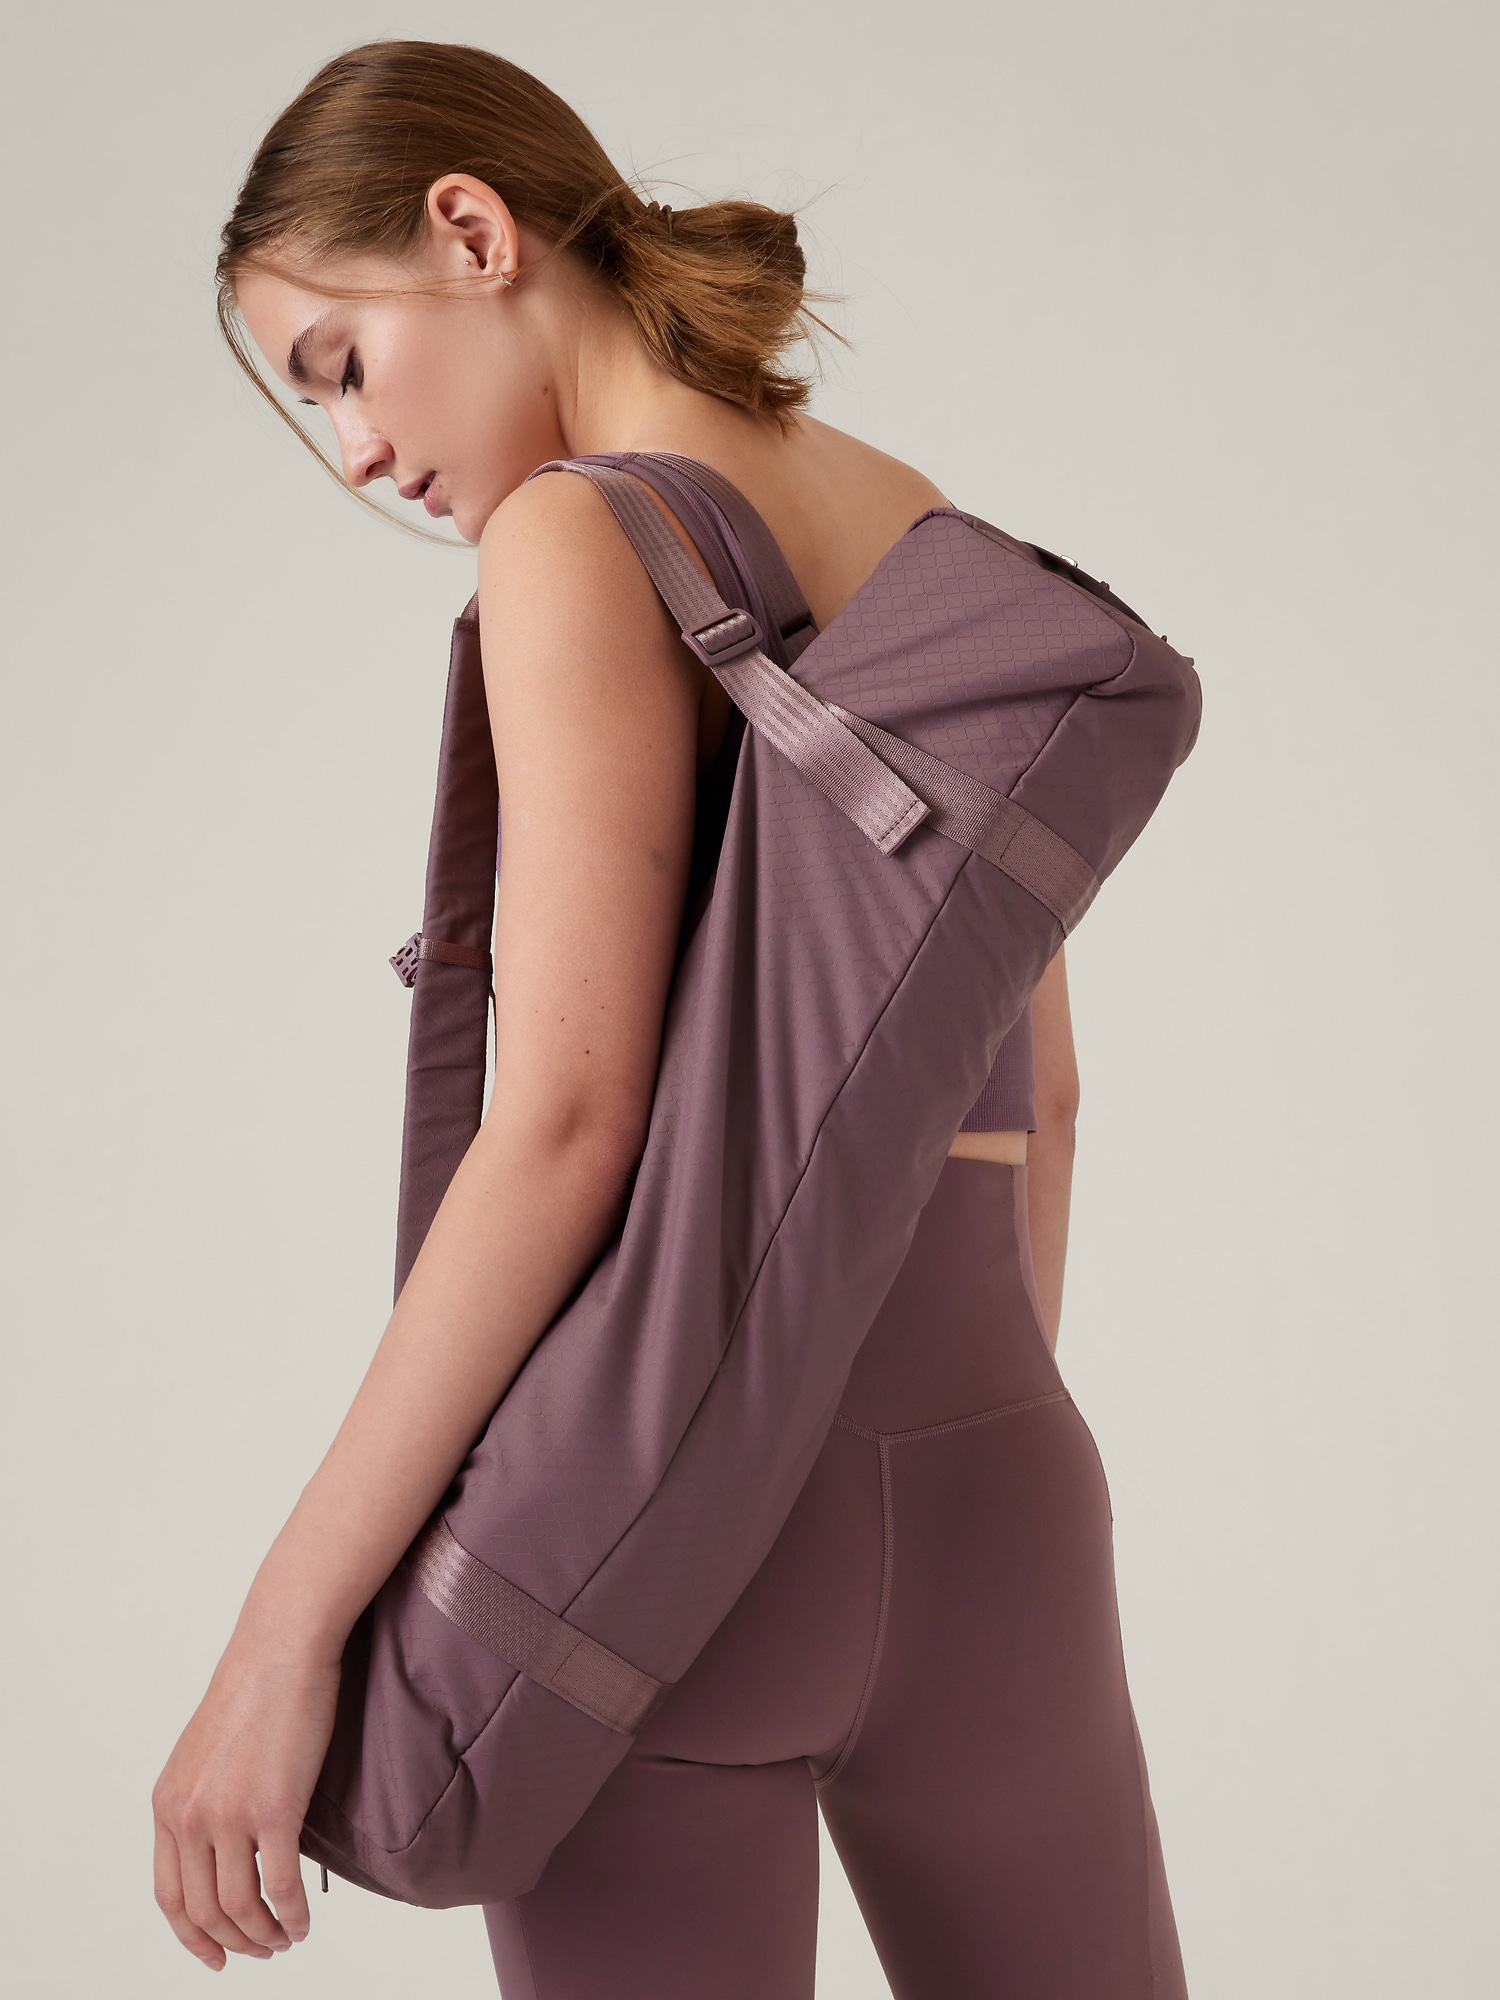 WRASCO Yoga Mat Bag for Women & Men, Light Green 2.0 | WRASCO